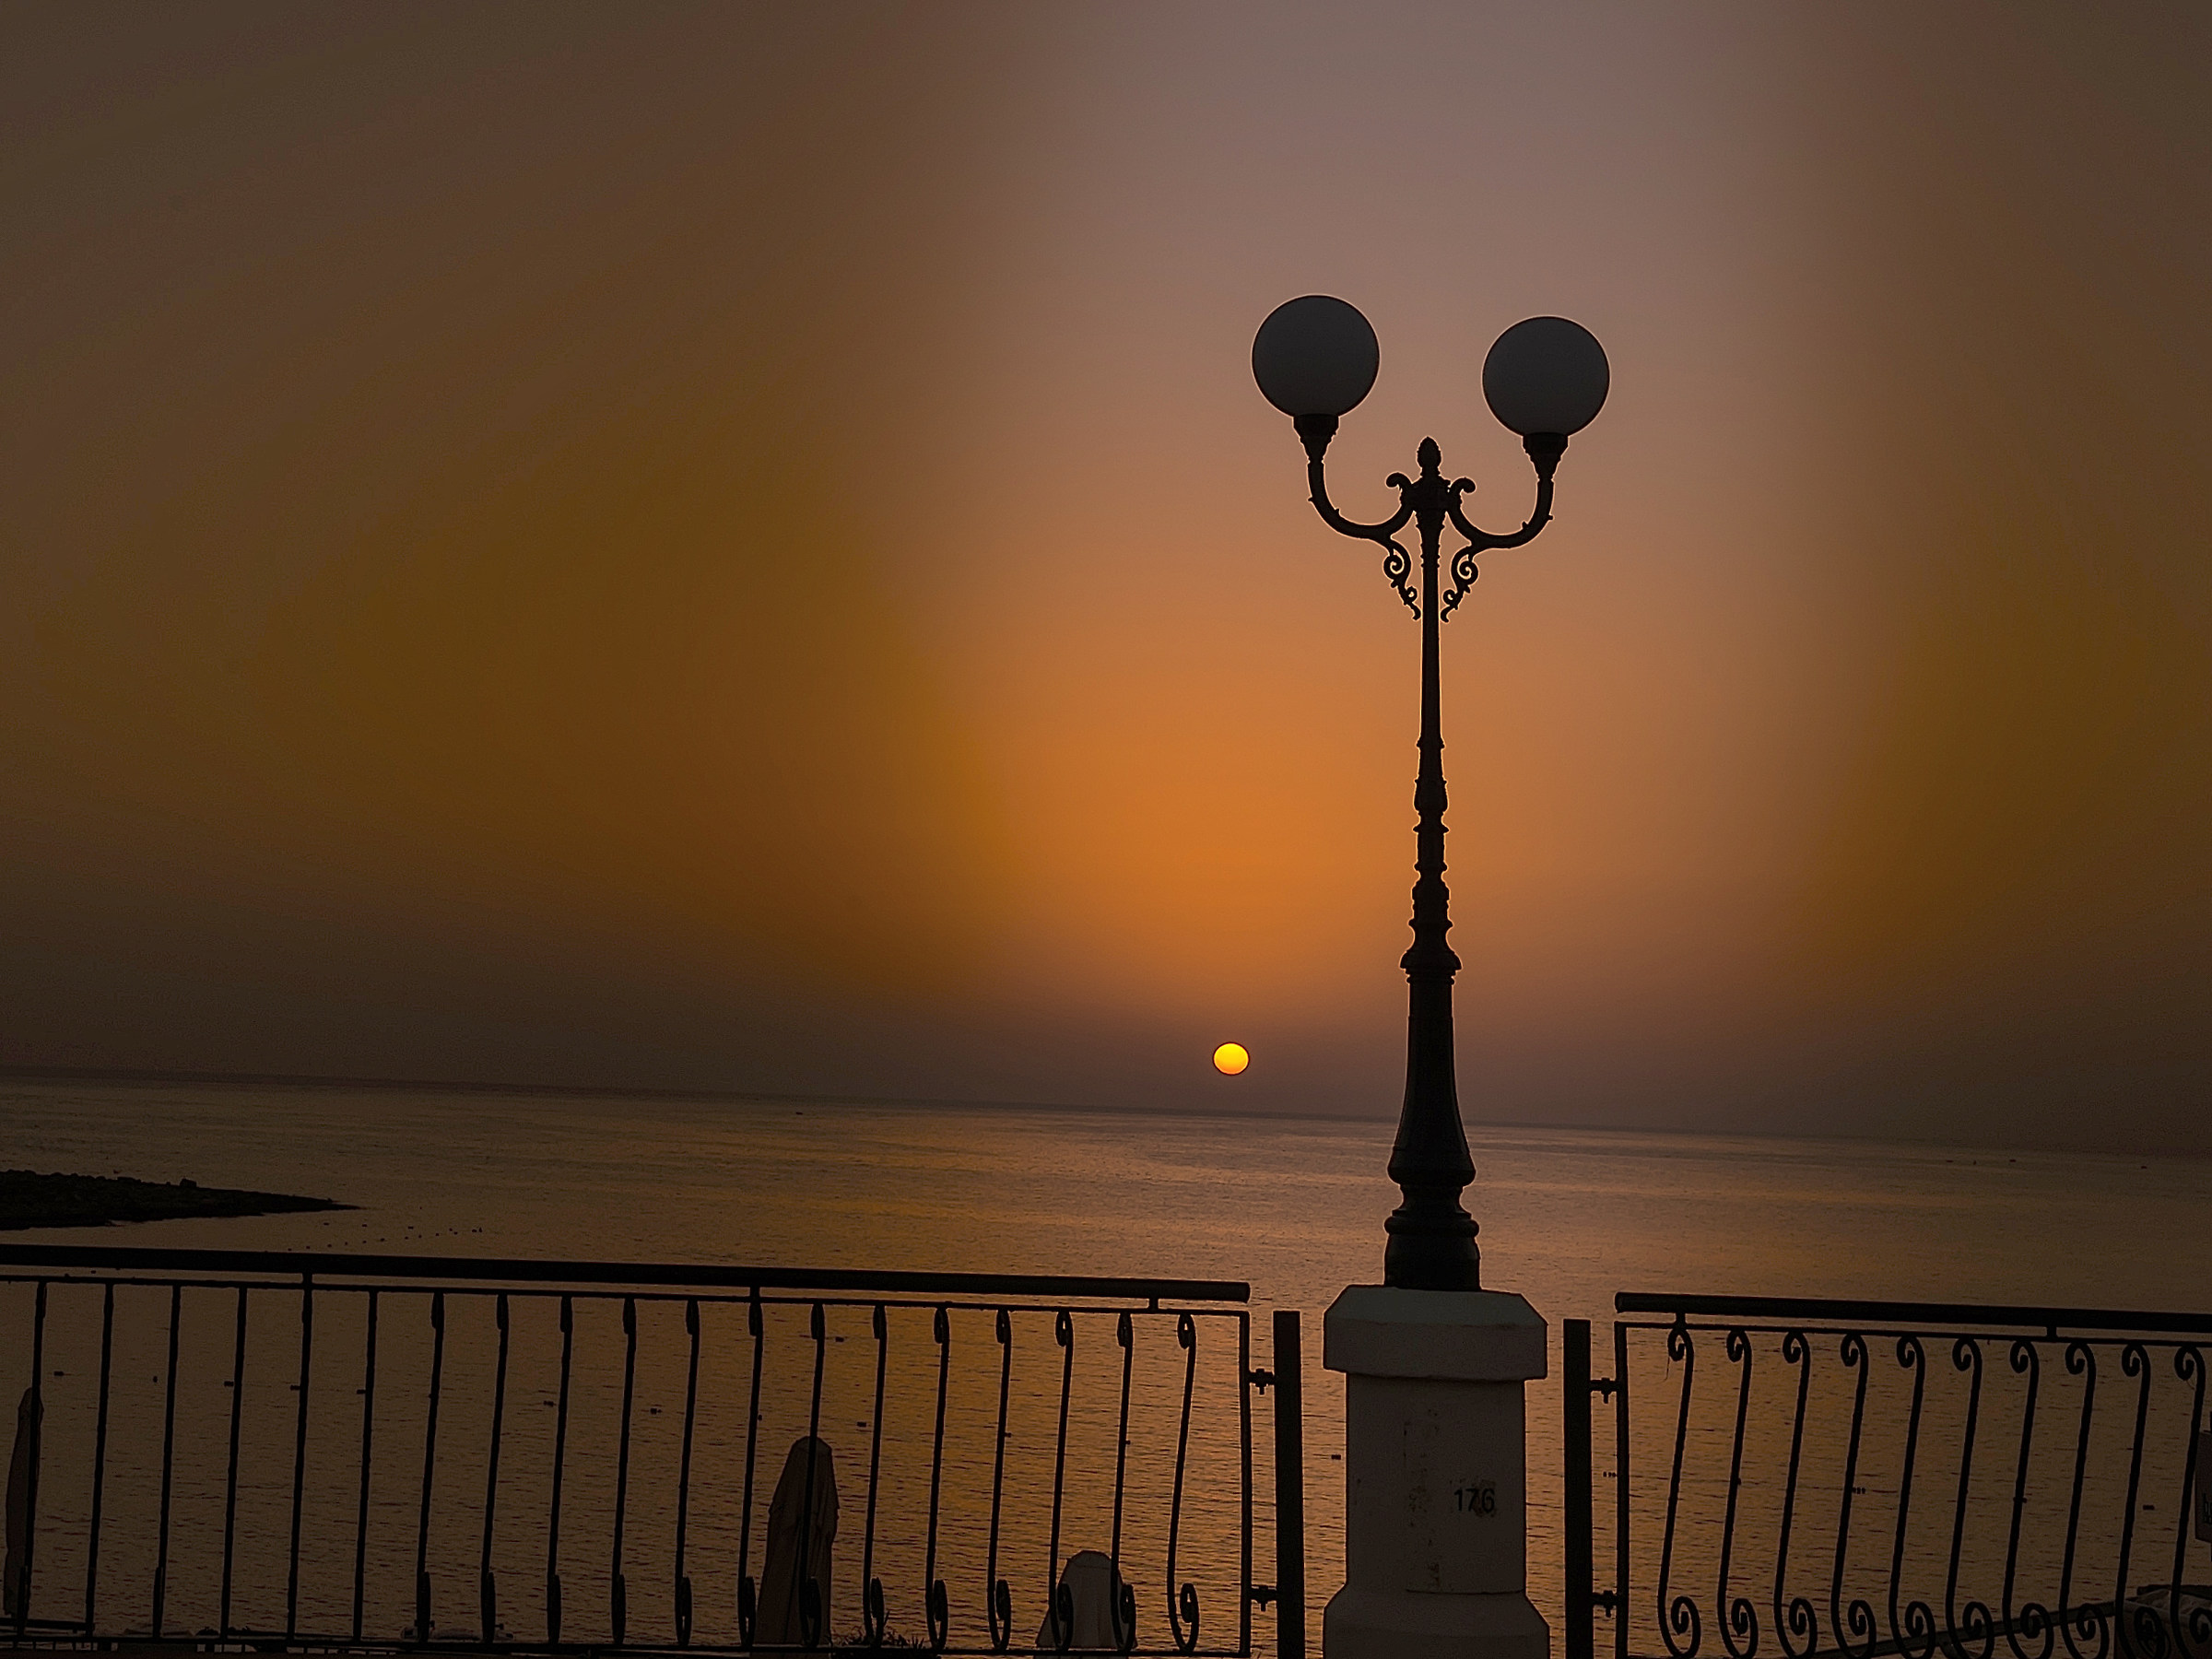 malta island - sunrise over the sea...